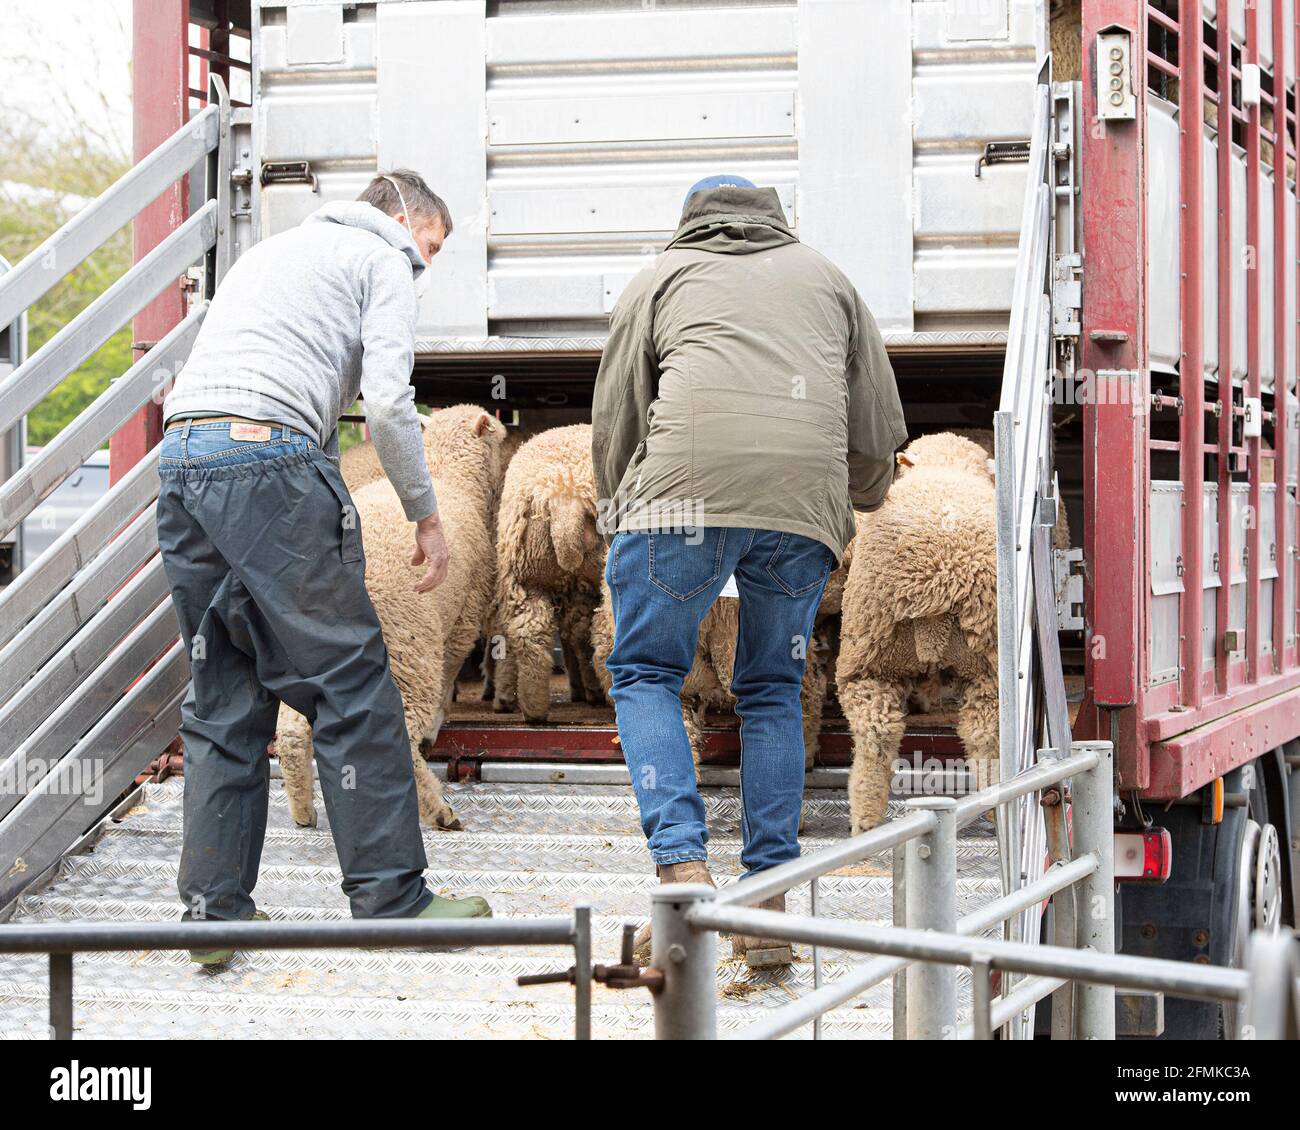 Bauern laden Schafe auf dem Markt in den Anhänger Stockfoto